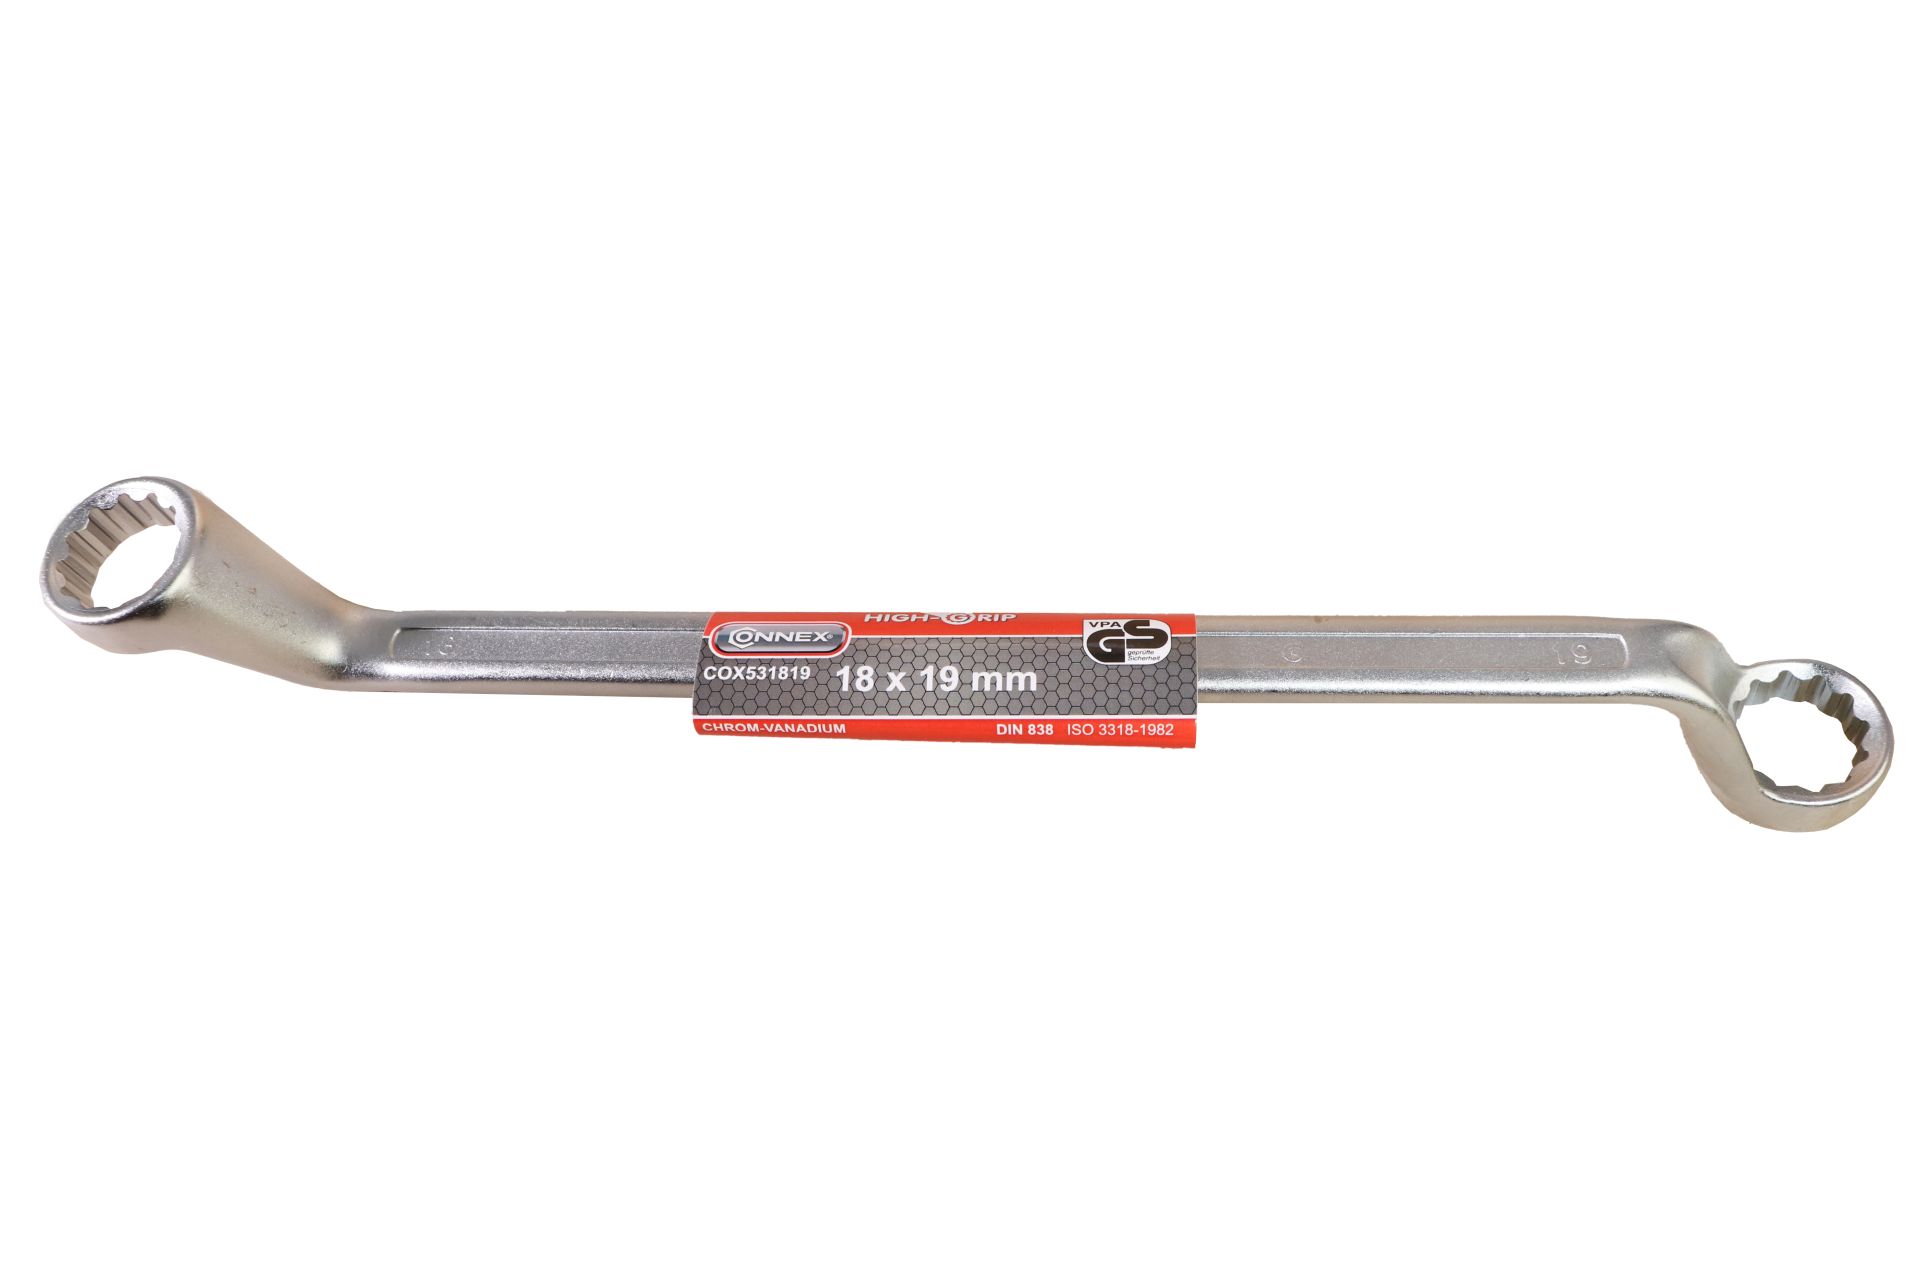 Ringschlüssel gekröpft 18 x 19 mm Chrom-Vanadium-Stahl 